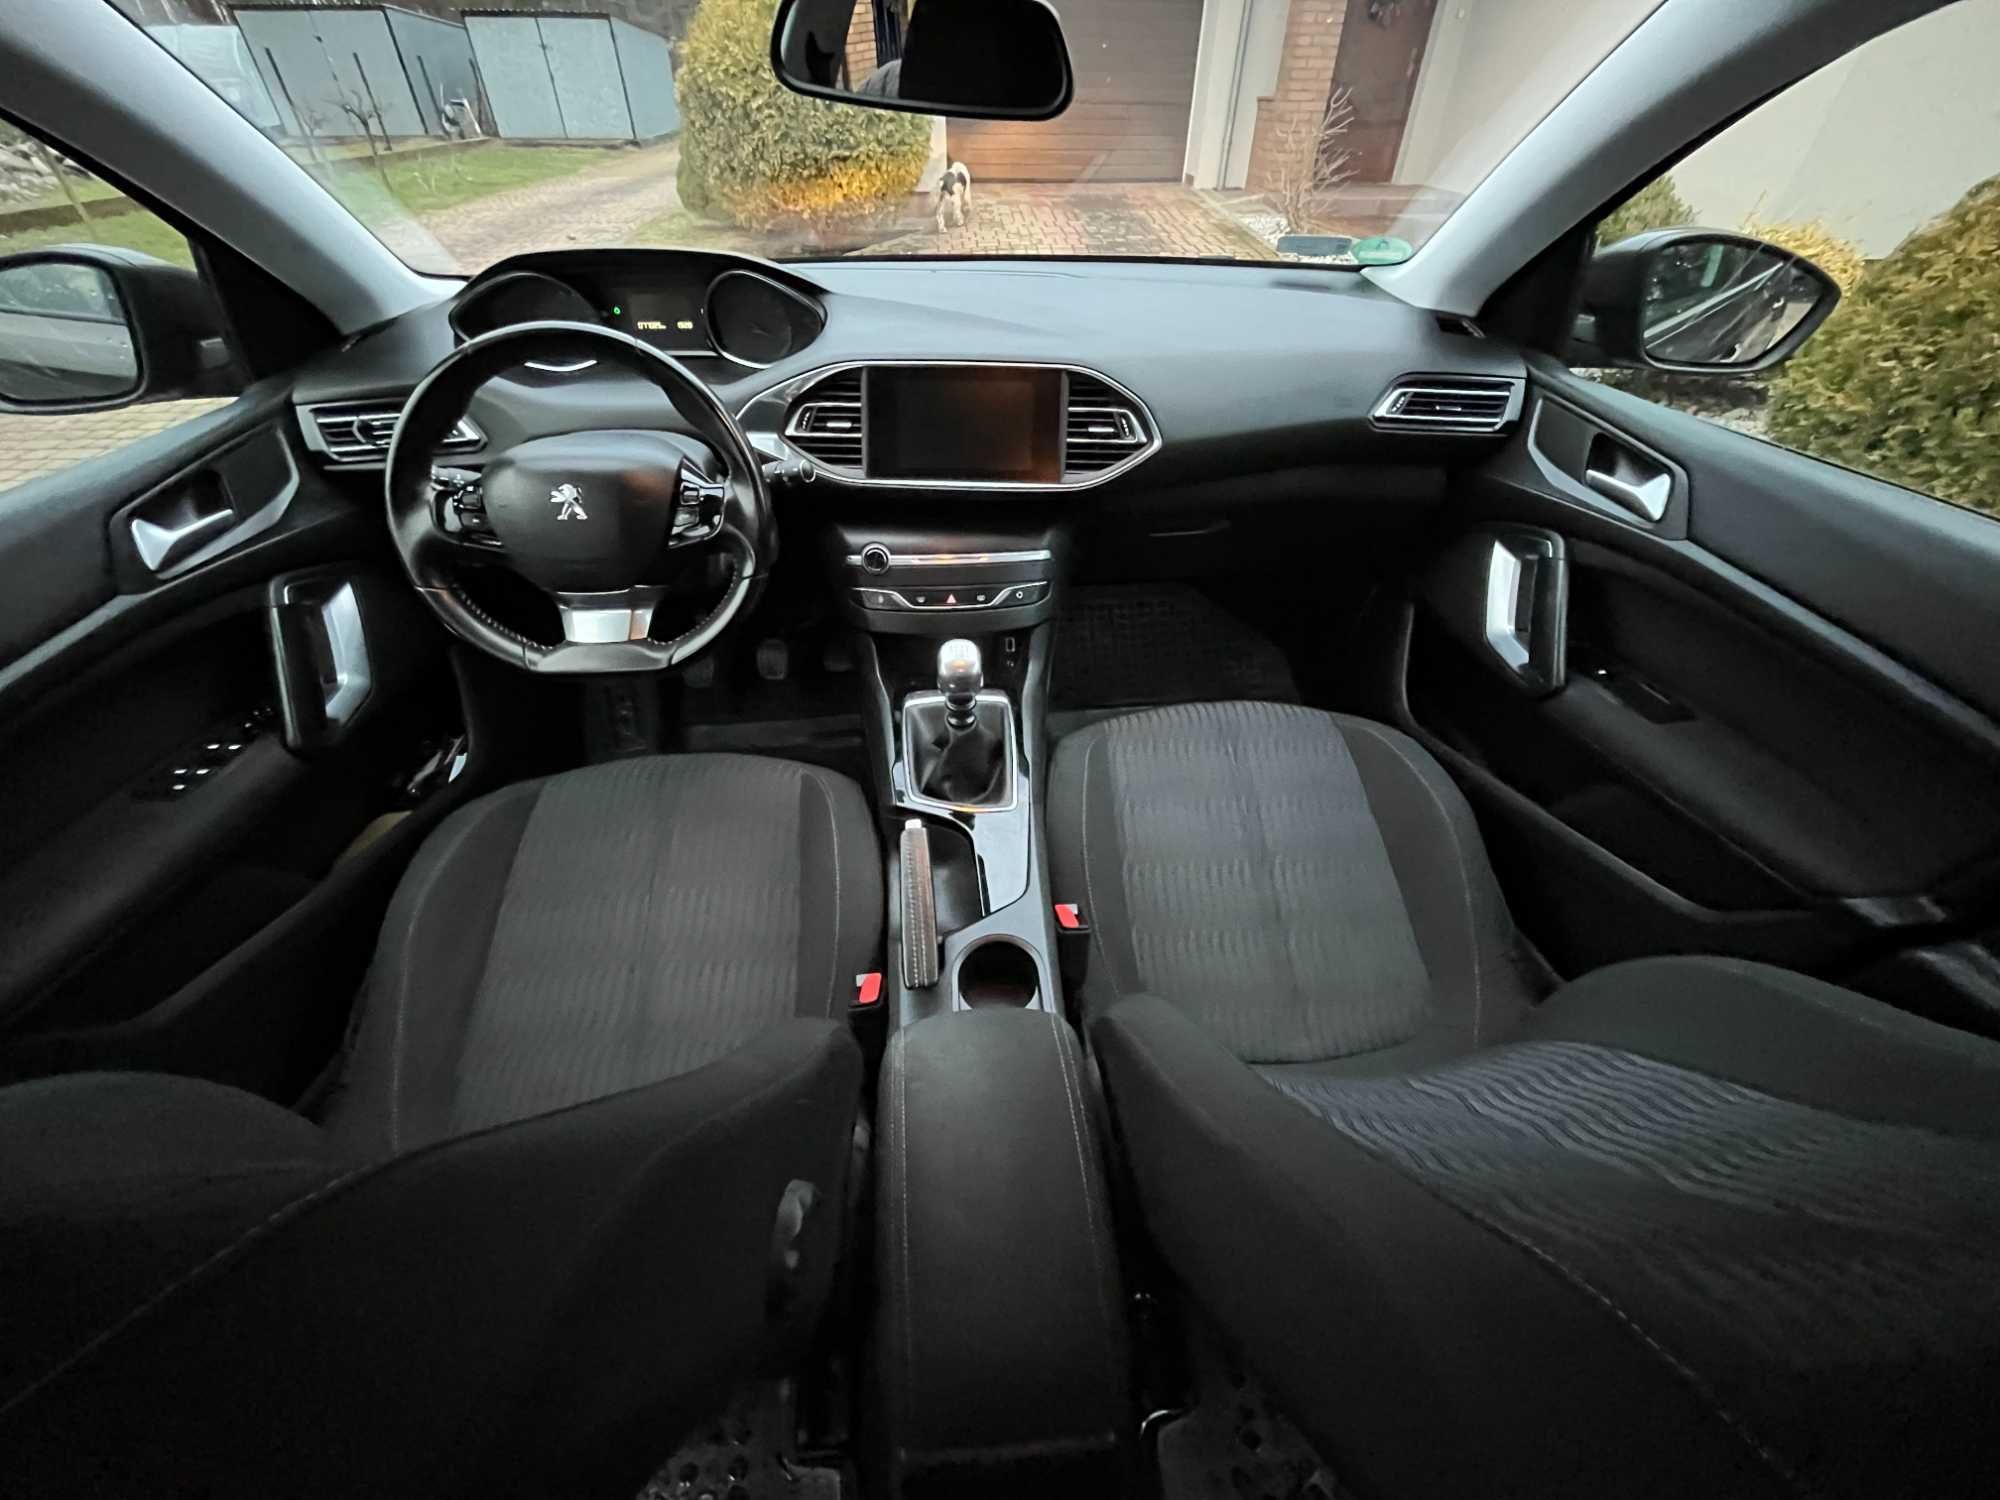 Peugeot 308 SW 2015 benzyna, super stan auta, 2 komplety alufelg